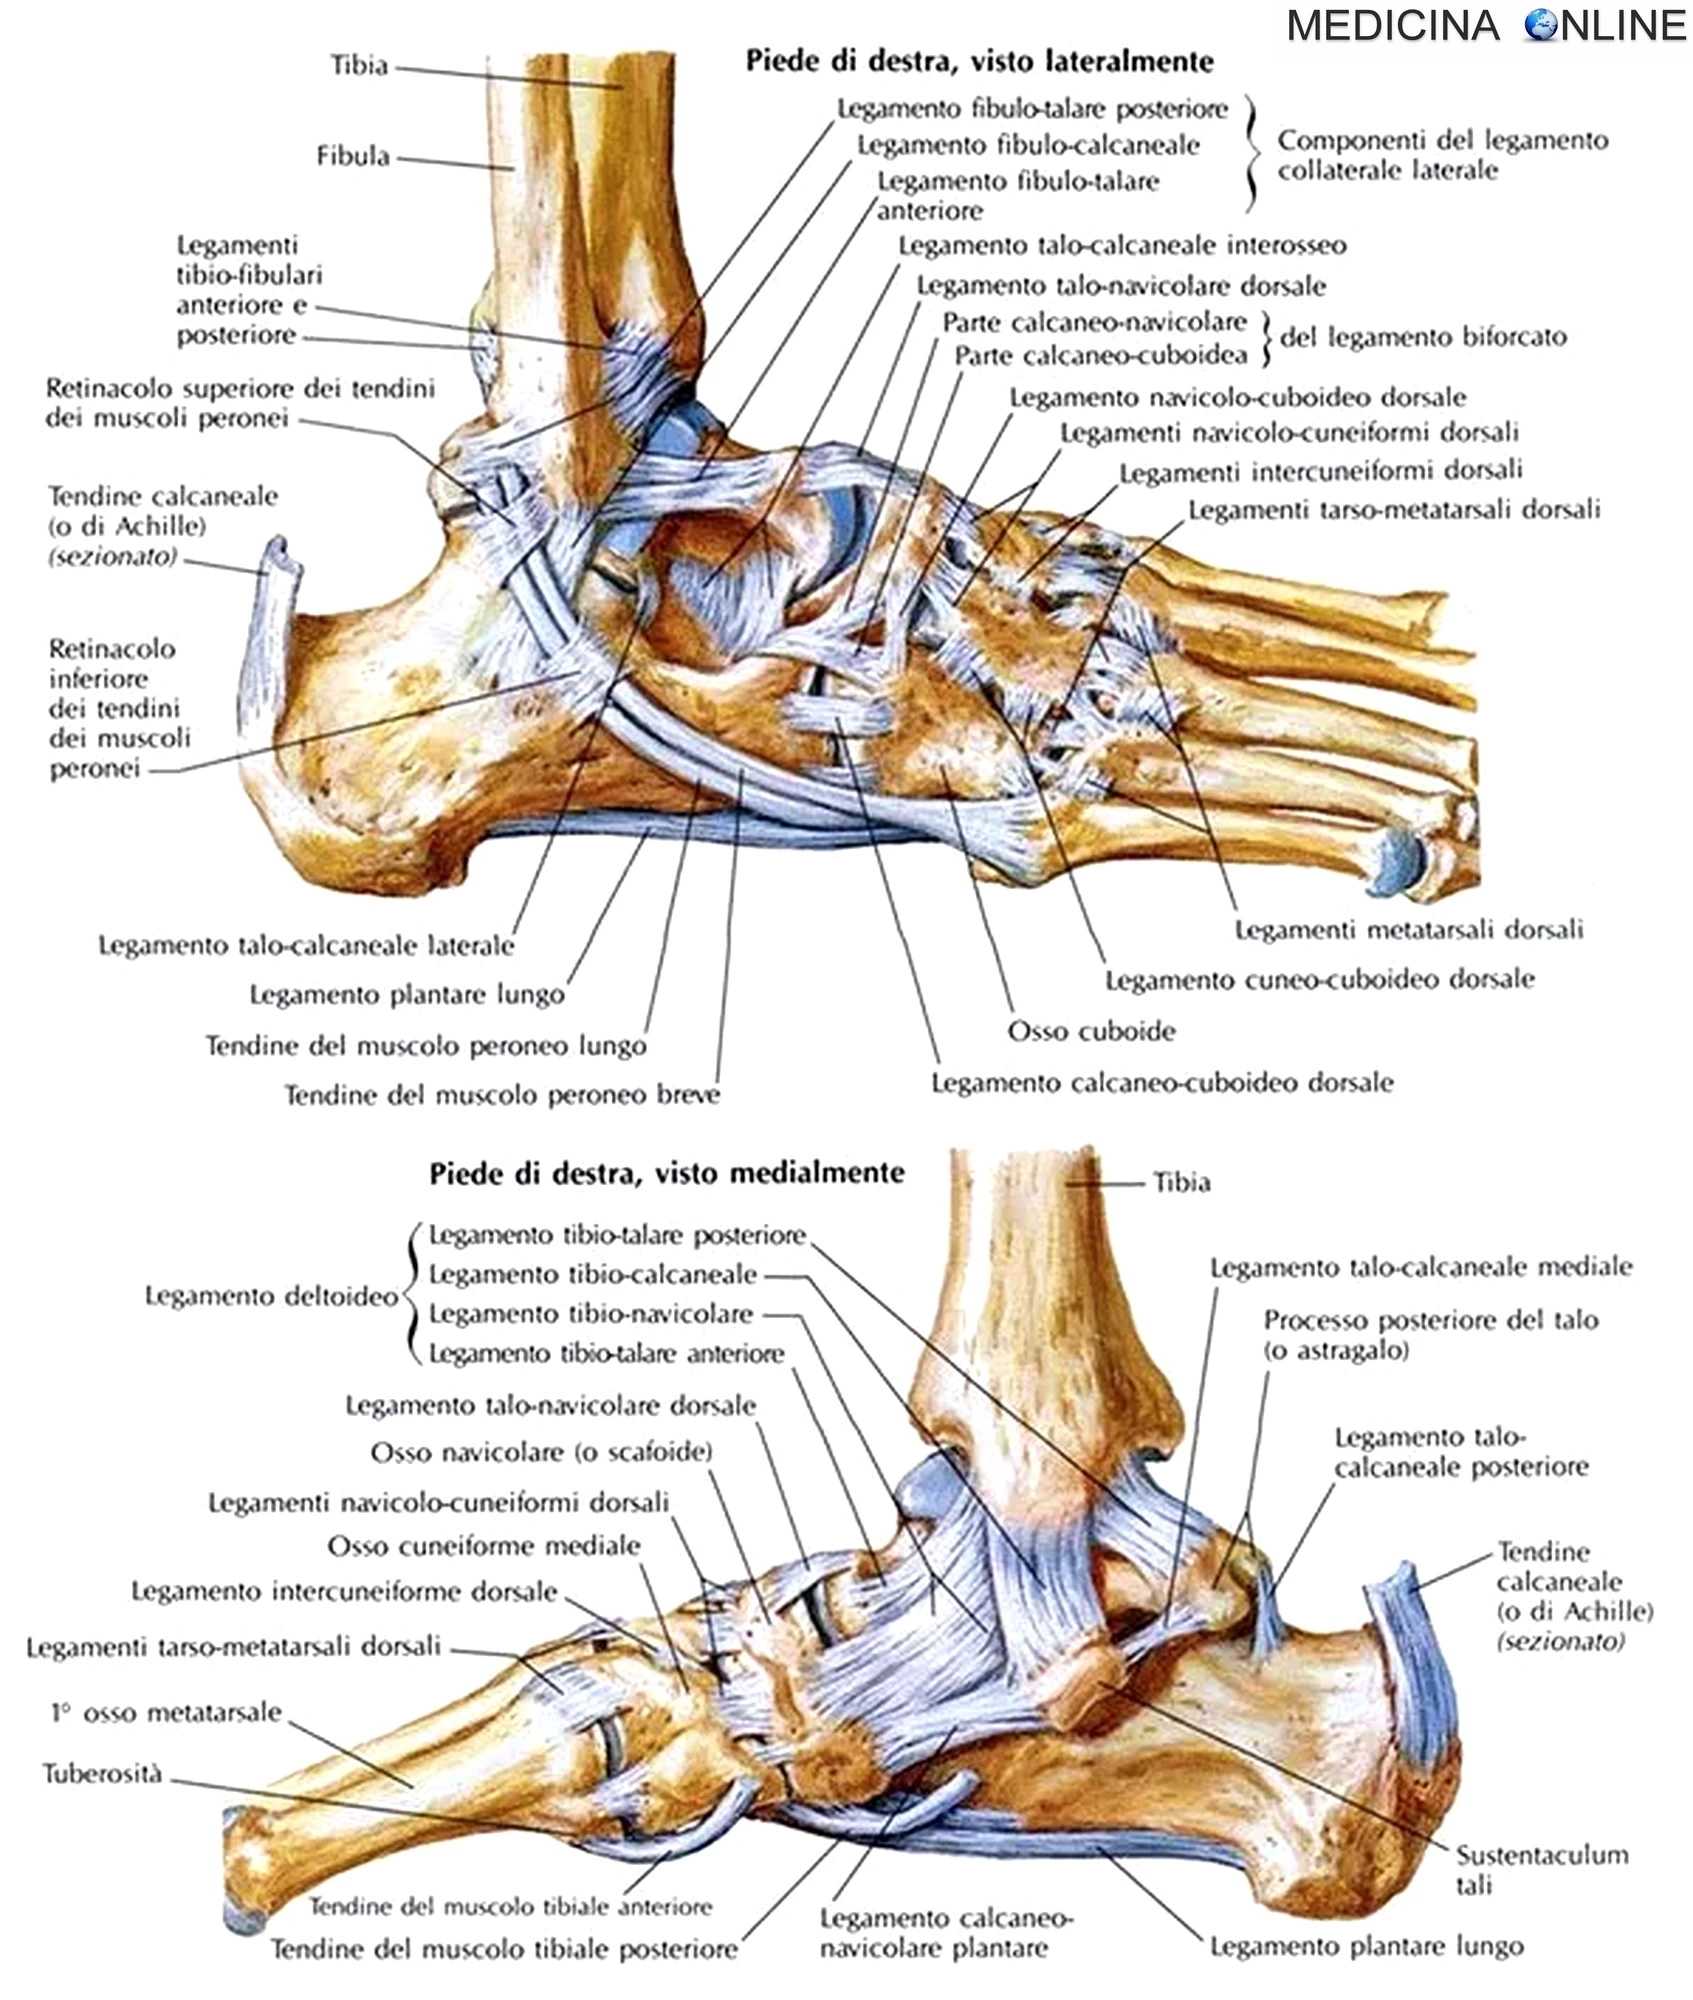 Кости голеностопного сустава человека. Кости и связки стопы анатомия человека. Стопа анатомия кости и суставы. Стопа анатомия строение суставы. Связки и сухожилия голеностопного сустава анатомия.